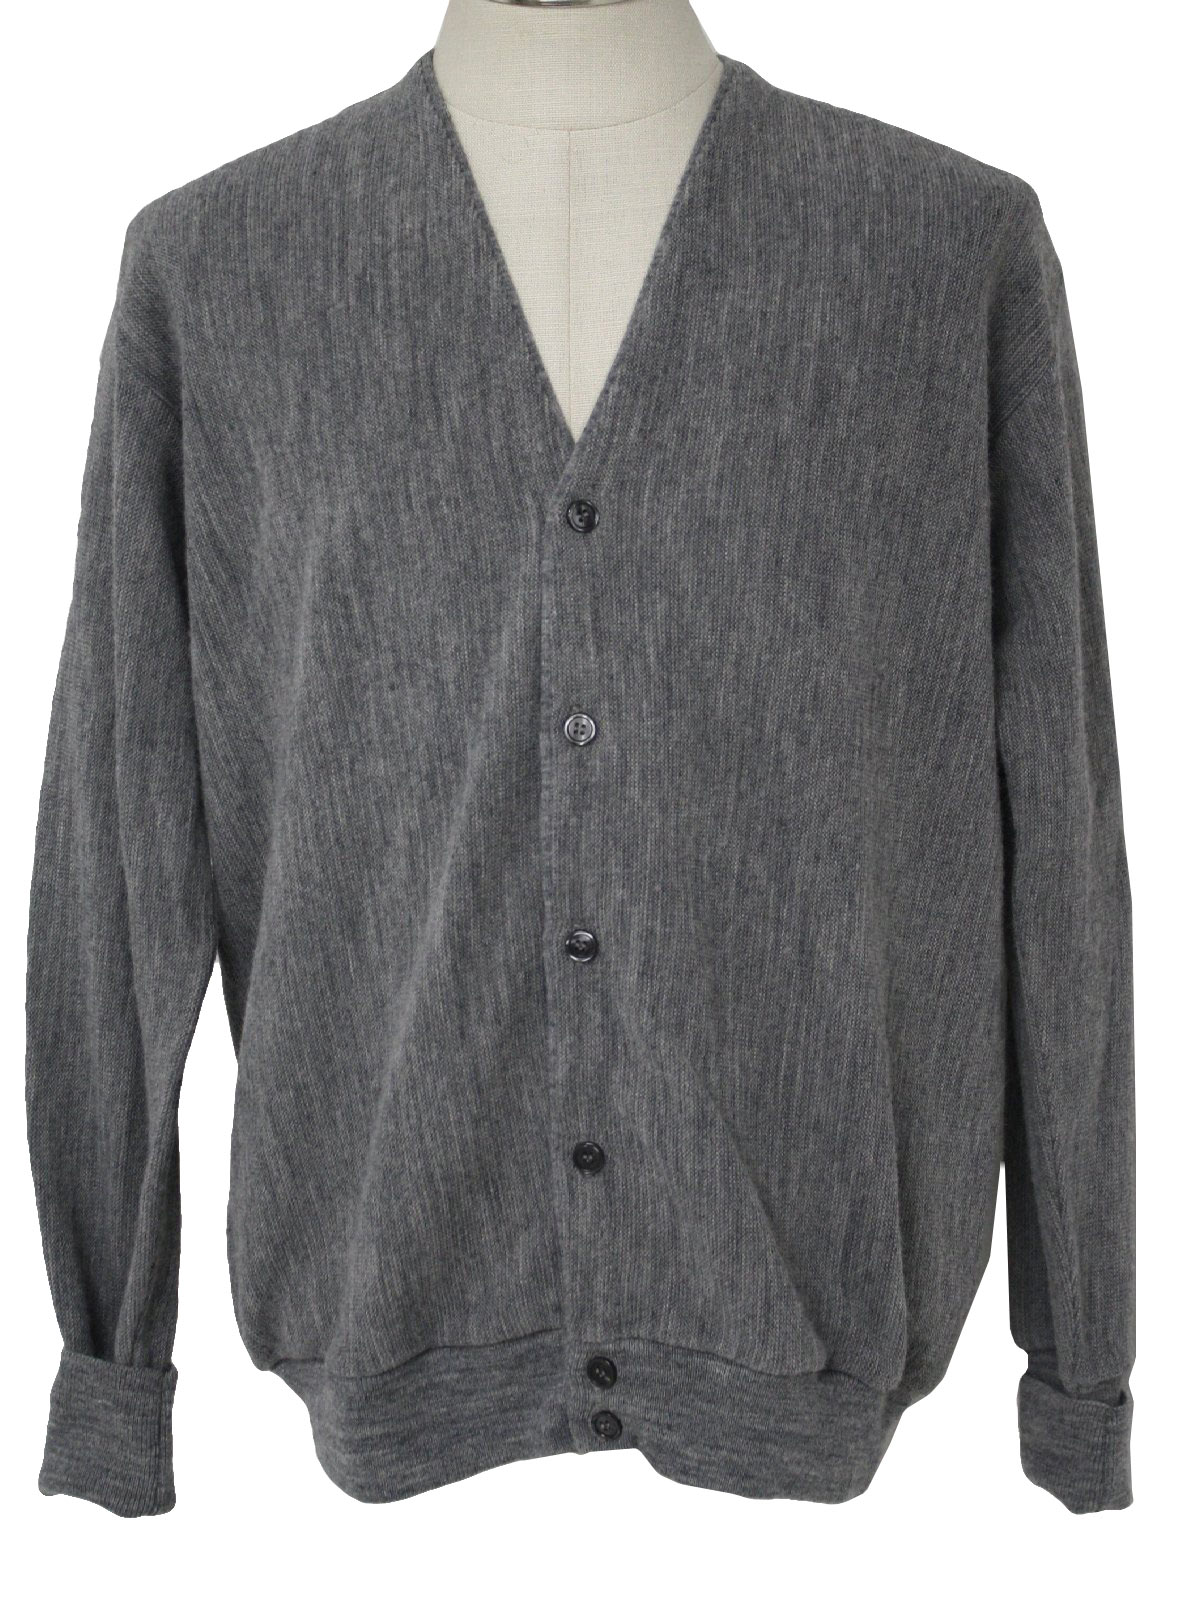 Retro 1980's Caridgan Sweater (Par Four) : 80s -Par Four- Mens grey ...